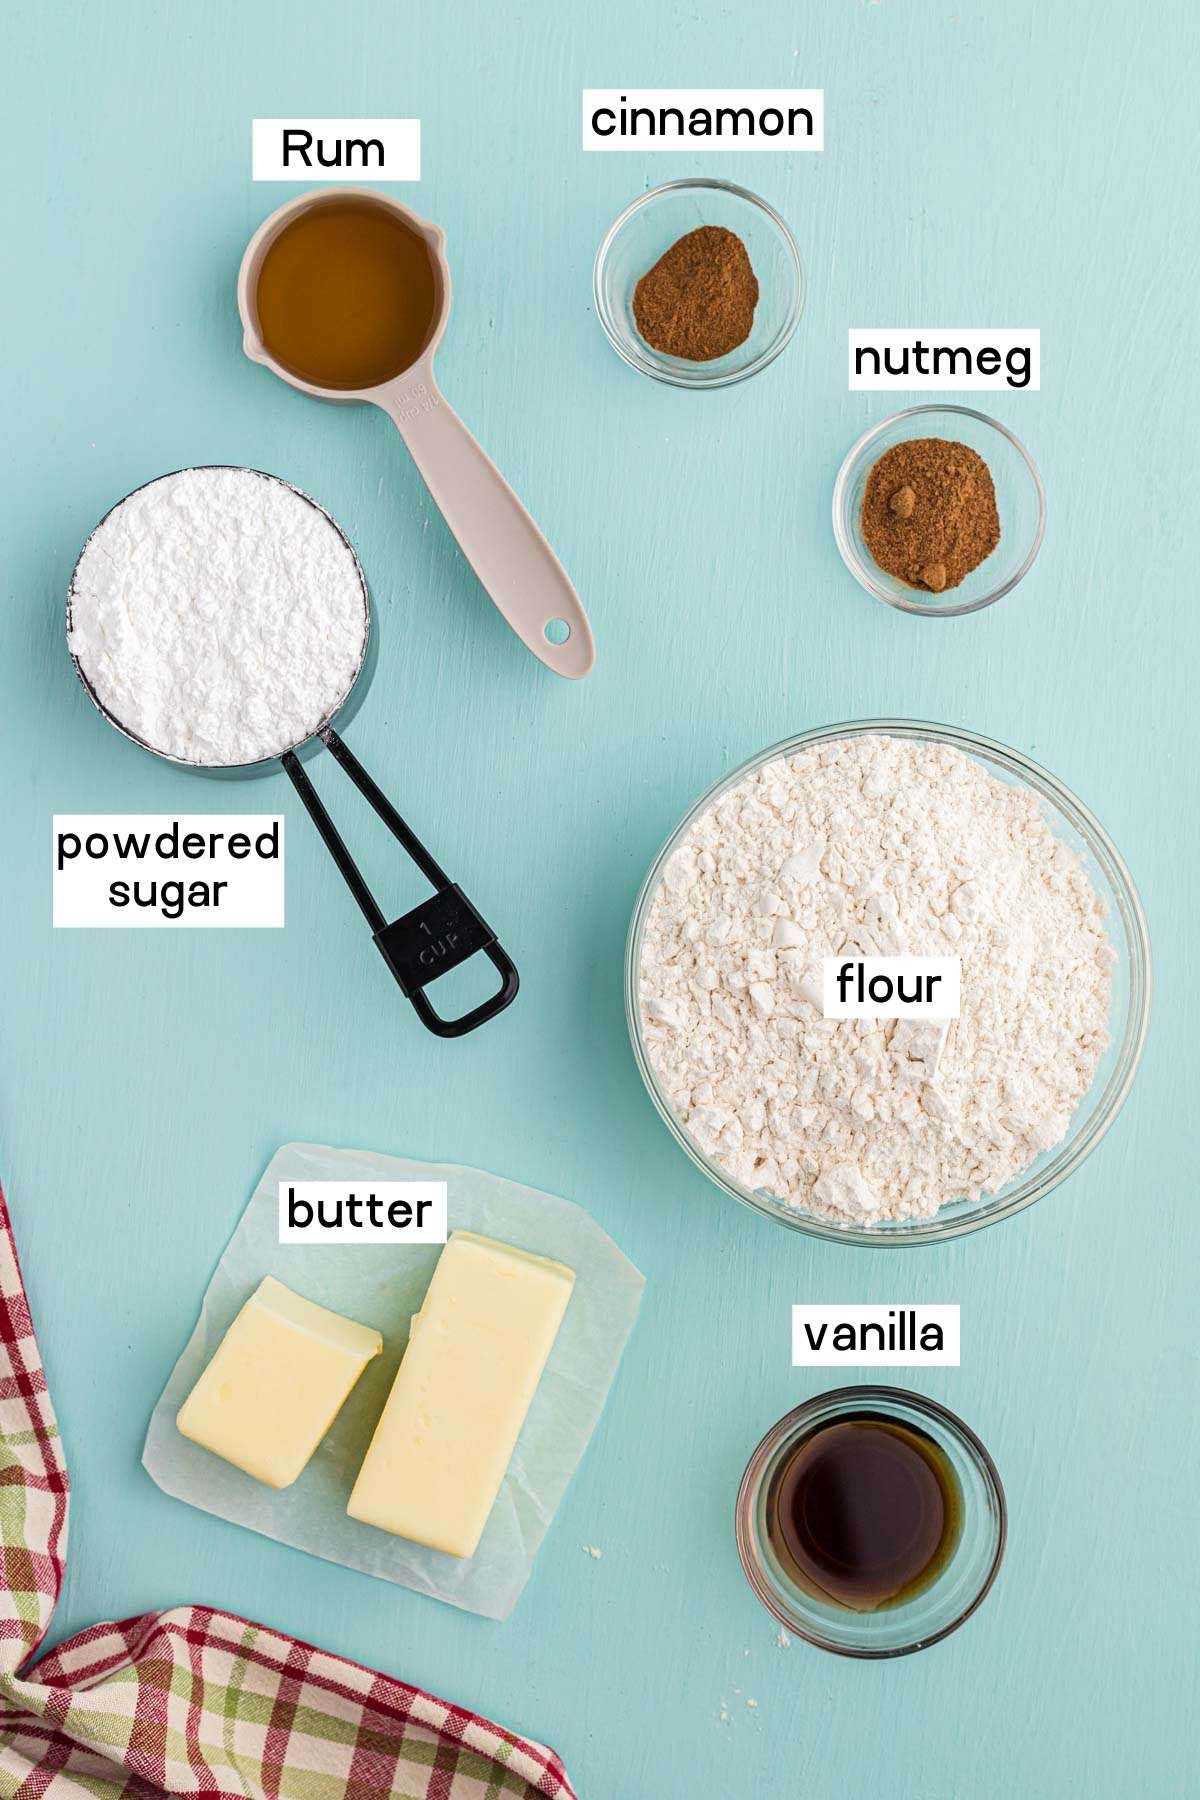 Ingredients needed to make rum cookies